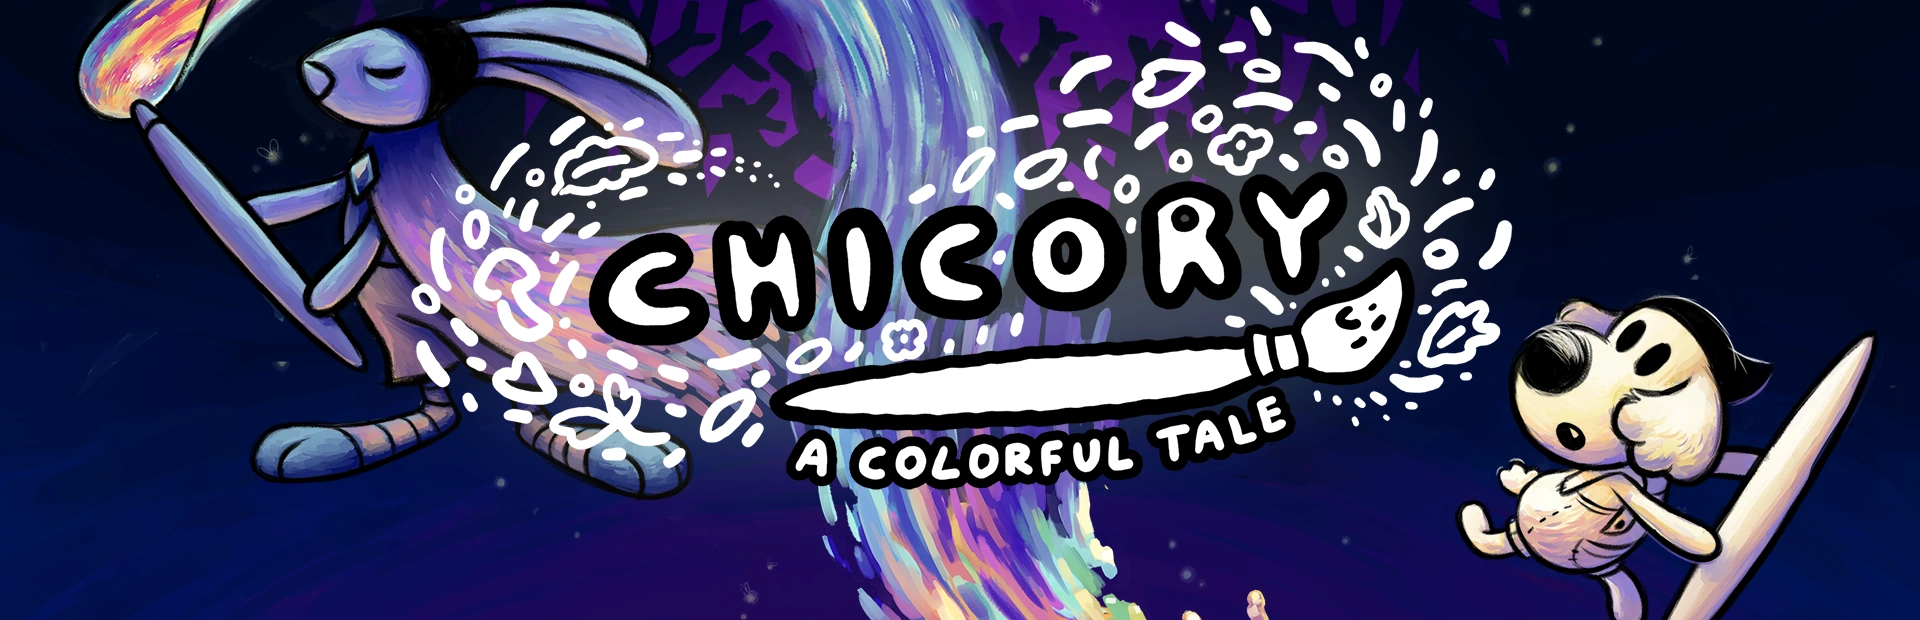 دانلود بازی Chicory: A Colorful Talehame برای PC | گیمباتو